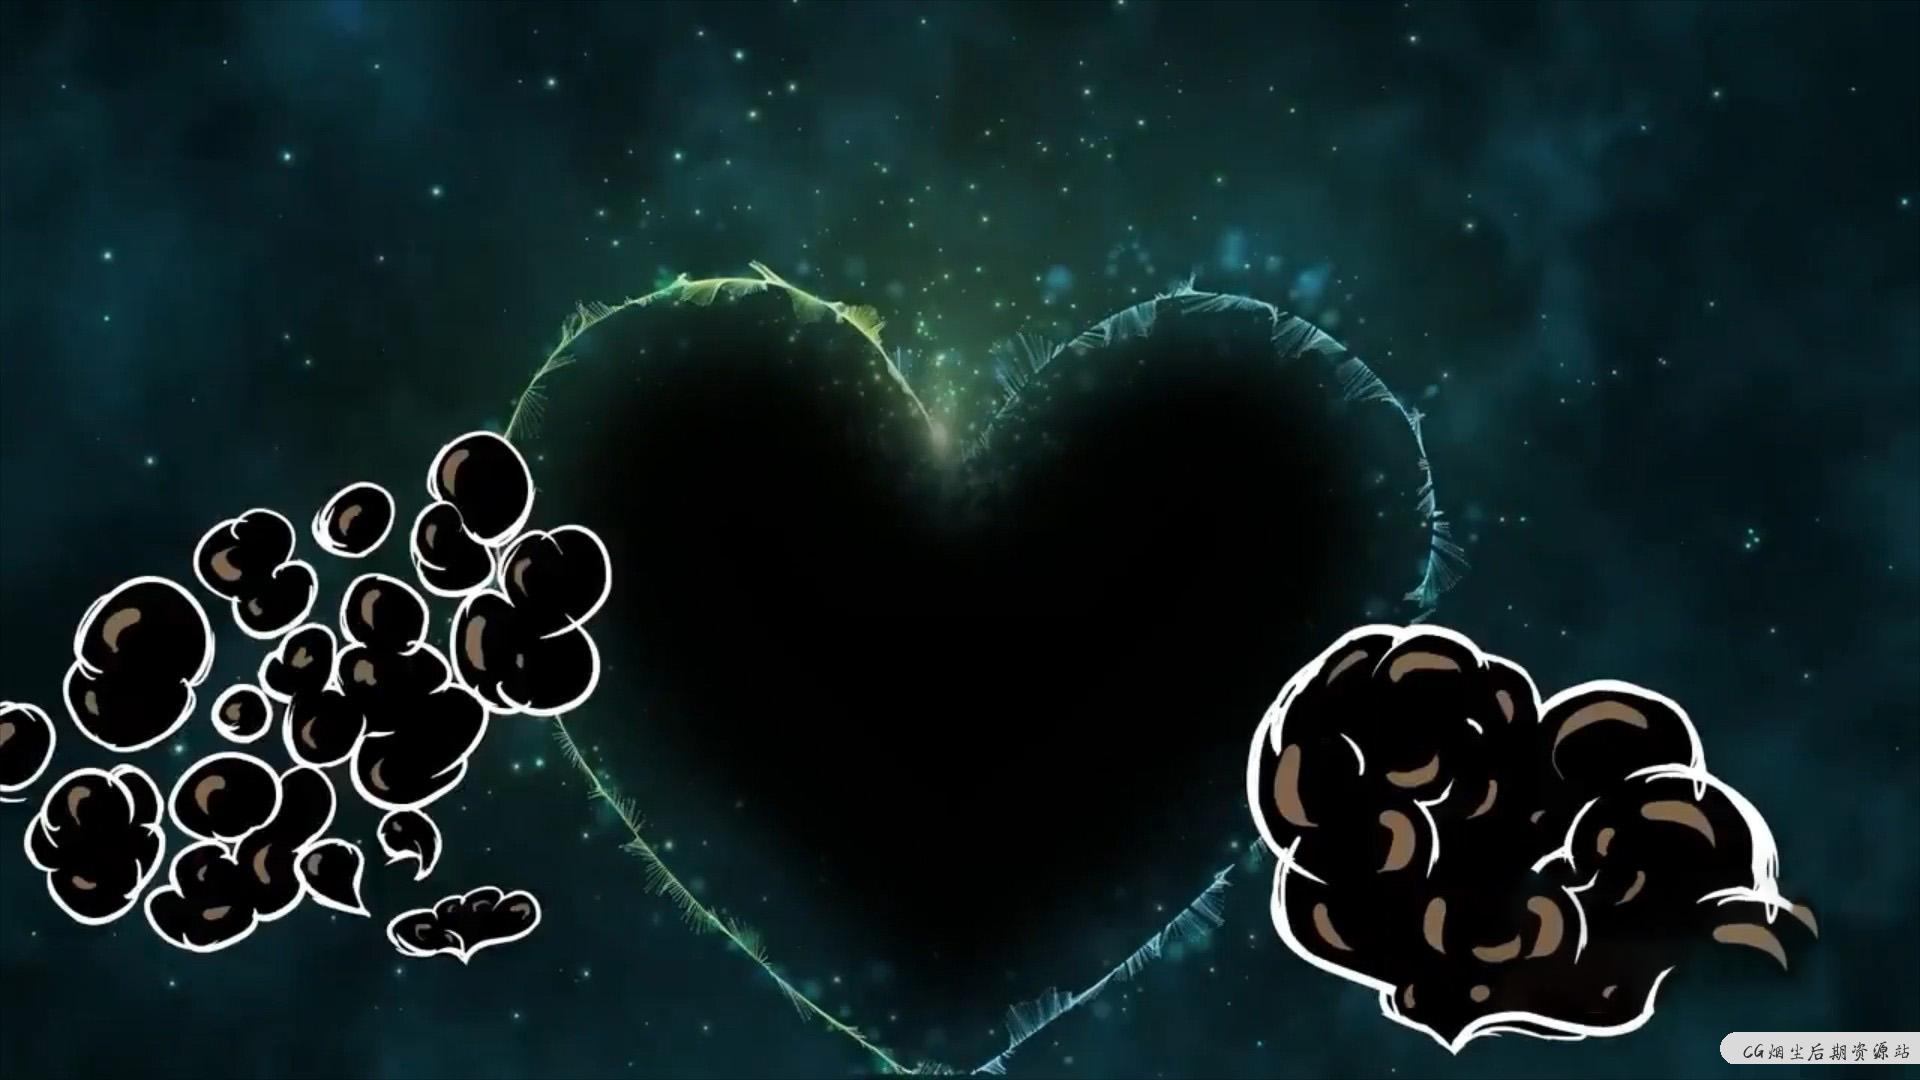 fcpx插件 10组可爱卡通爱心桃心动画素材 Cartoon Love Elements